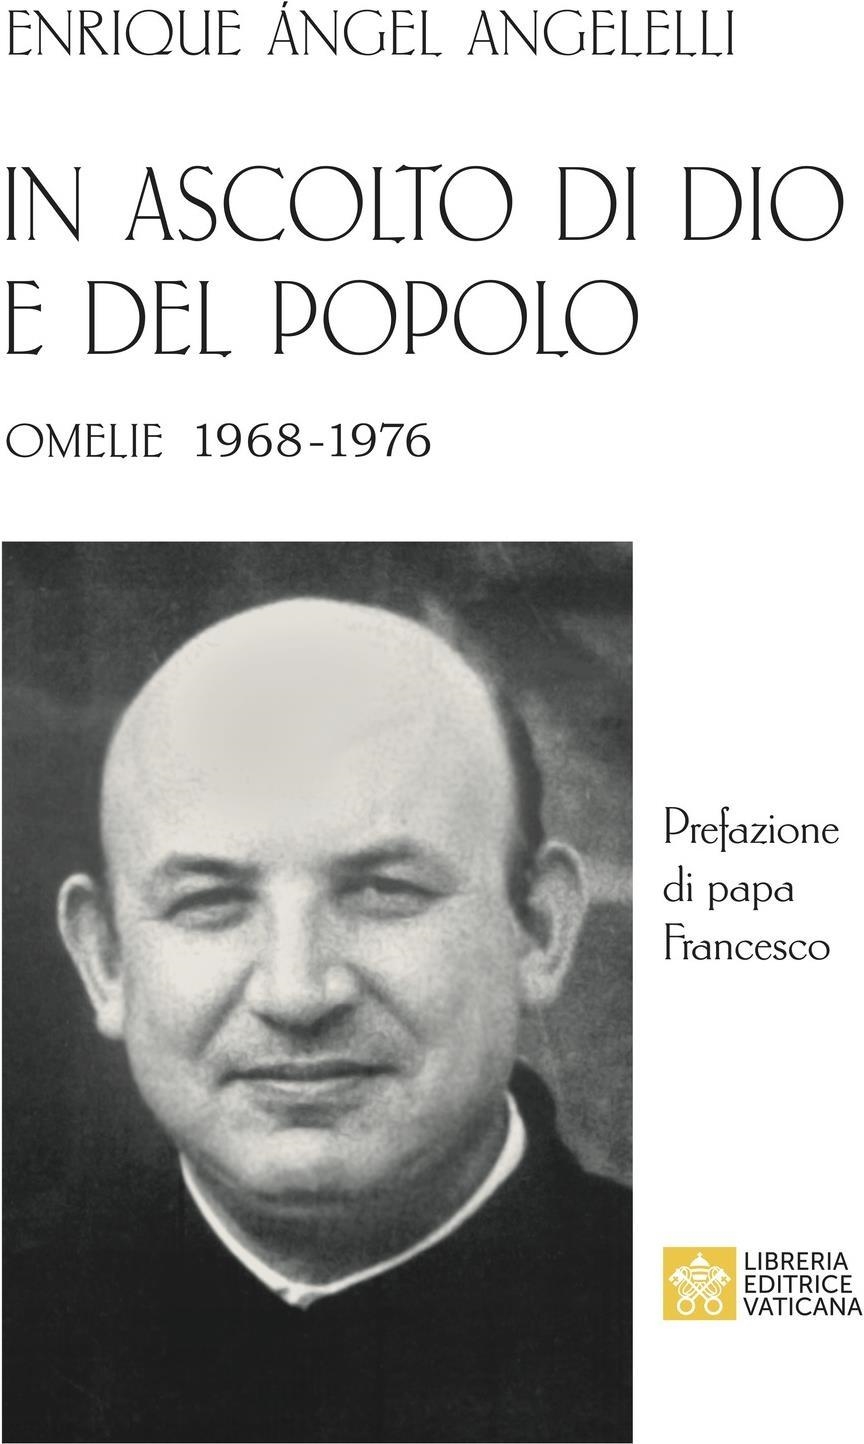 Libri Angelelli Enrique Angel - In Ascolto Di Dio E Del Popolo. Omelie 1968-1976 NUOVO SIGILLATO, EDIZIONE DEL 30/01/2024 SUBITO DISPONIBILE